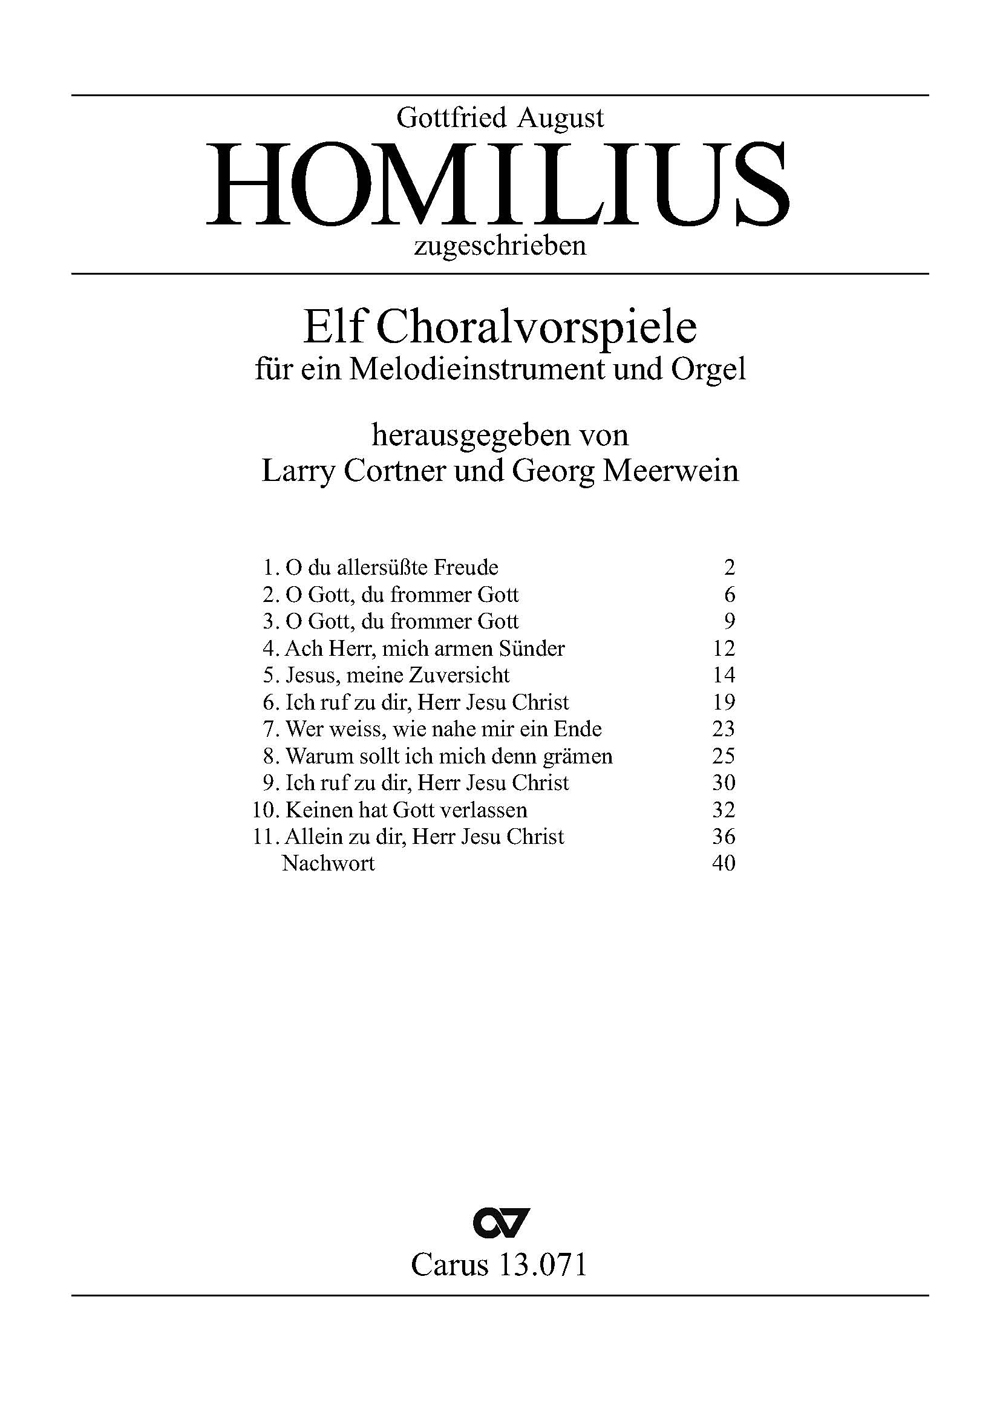 Homilius: Elf Choralvorspiele (HOMILIUS GOTTFRIED AUGUST)